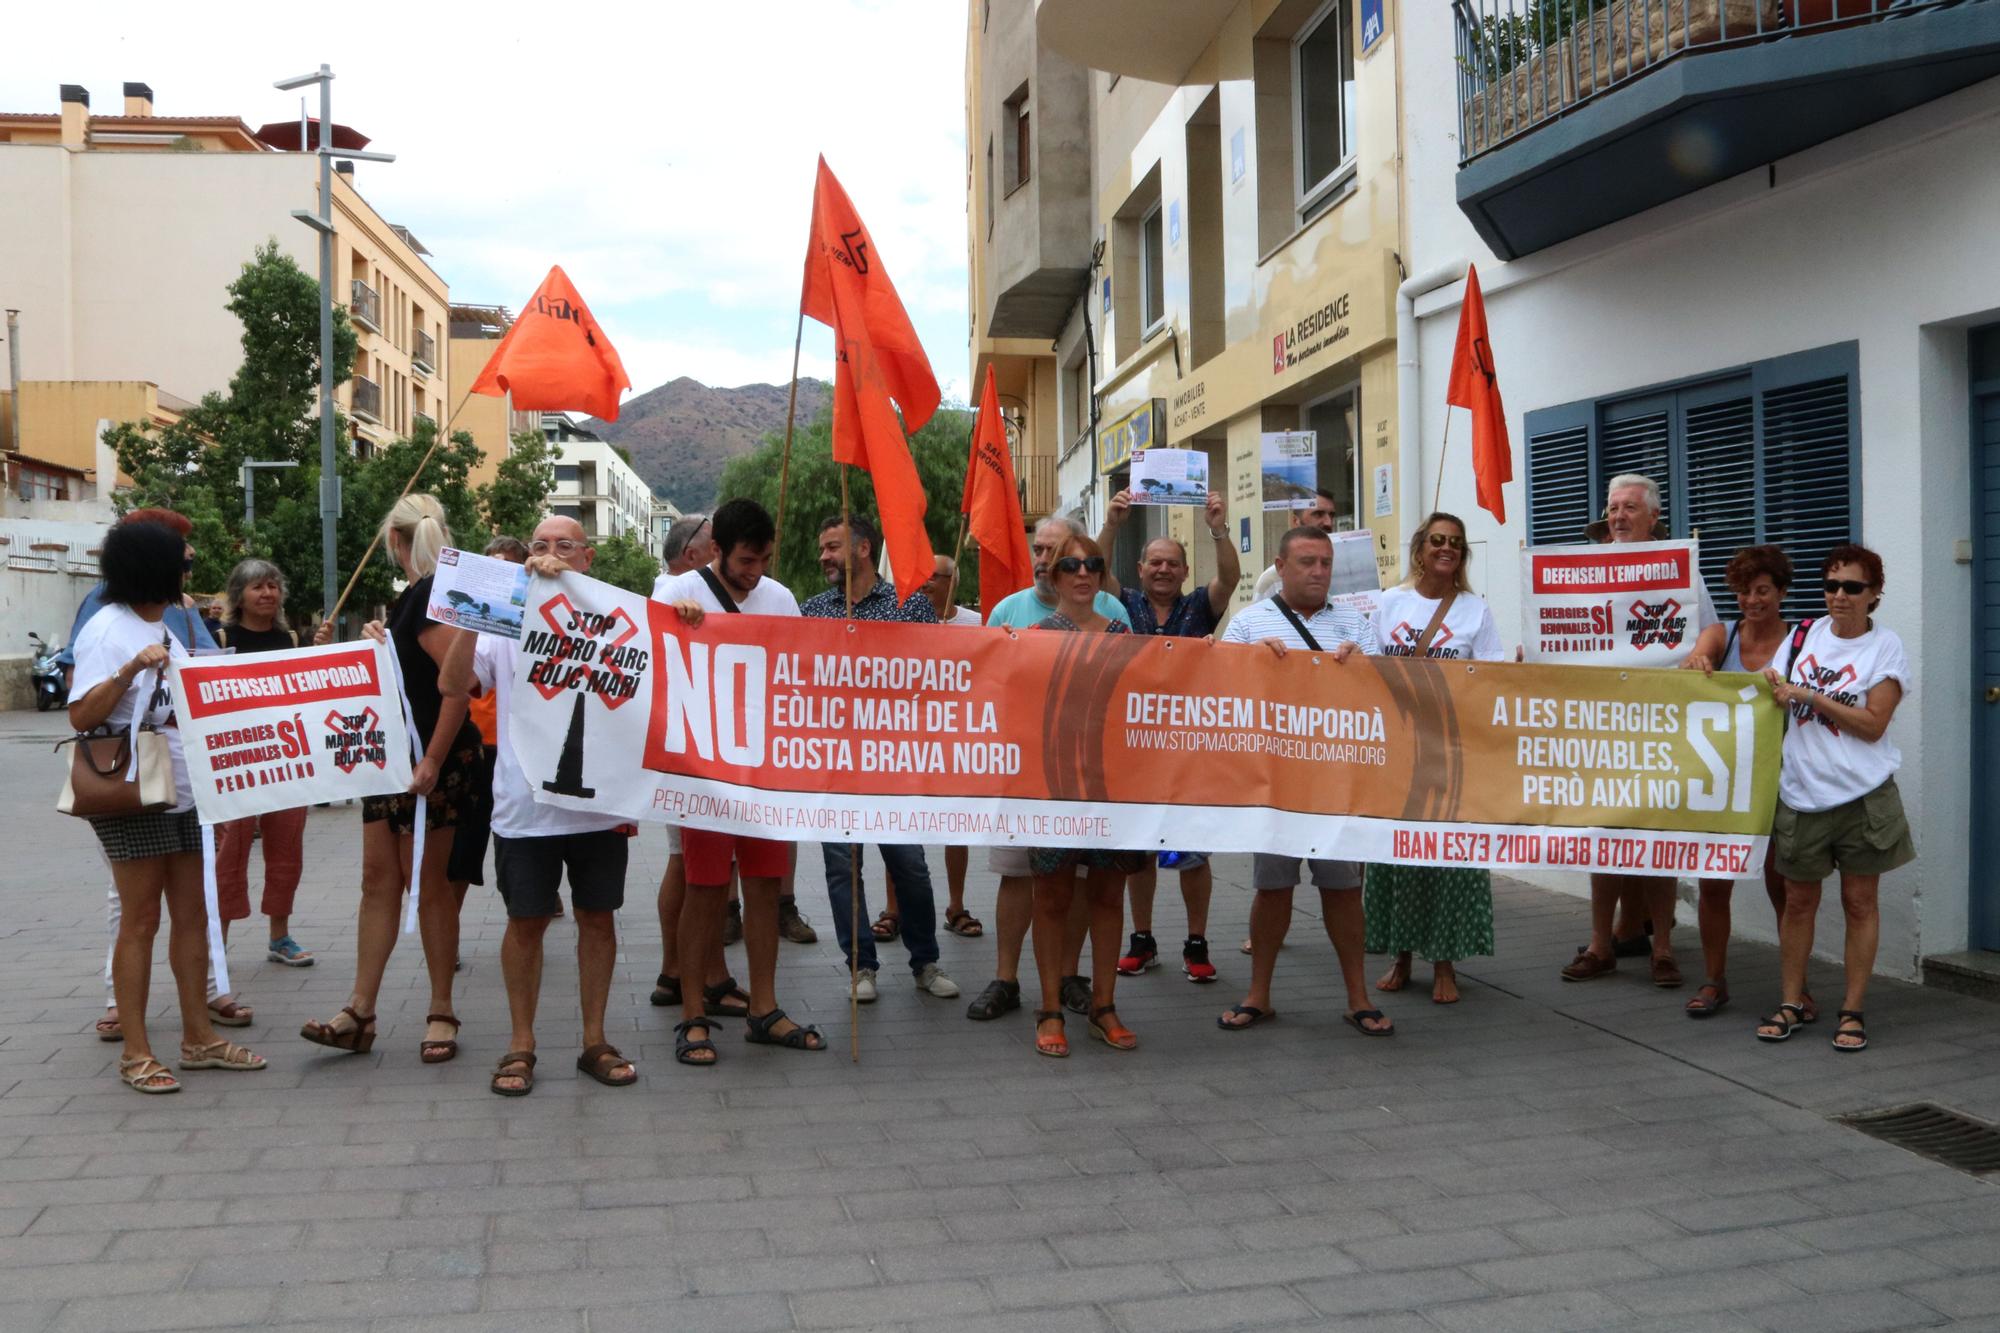 Una vintena de detractors, integrats per la plataforma Stop Macroparc Eòlic Marí i Iaeden, s'han congregat a l'exterior amb pancartes i crits en contra del projecte